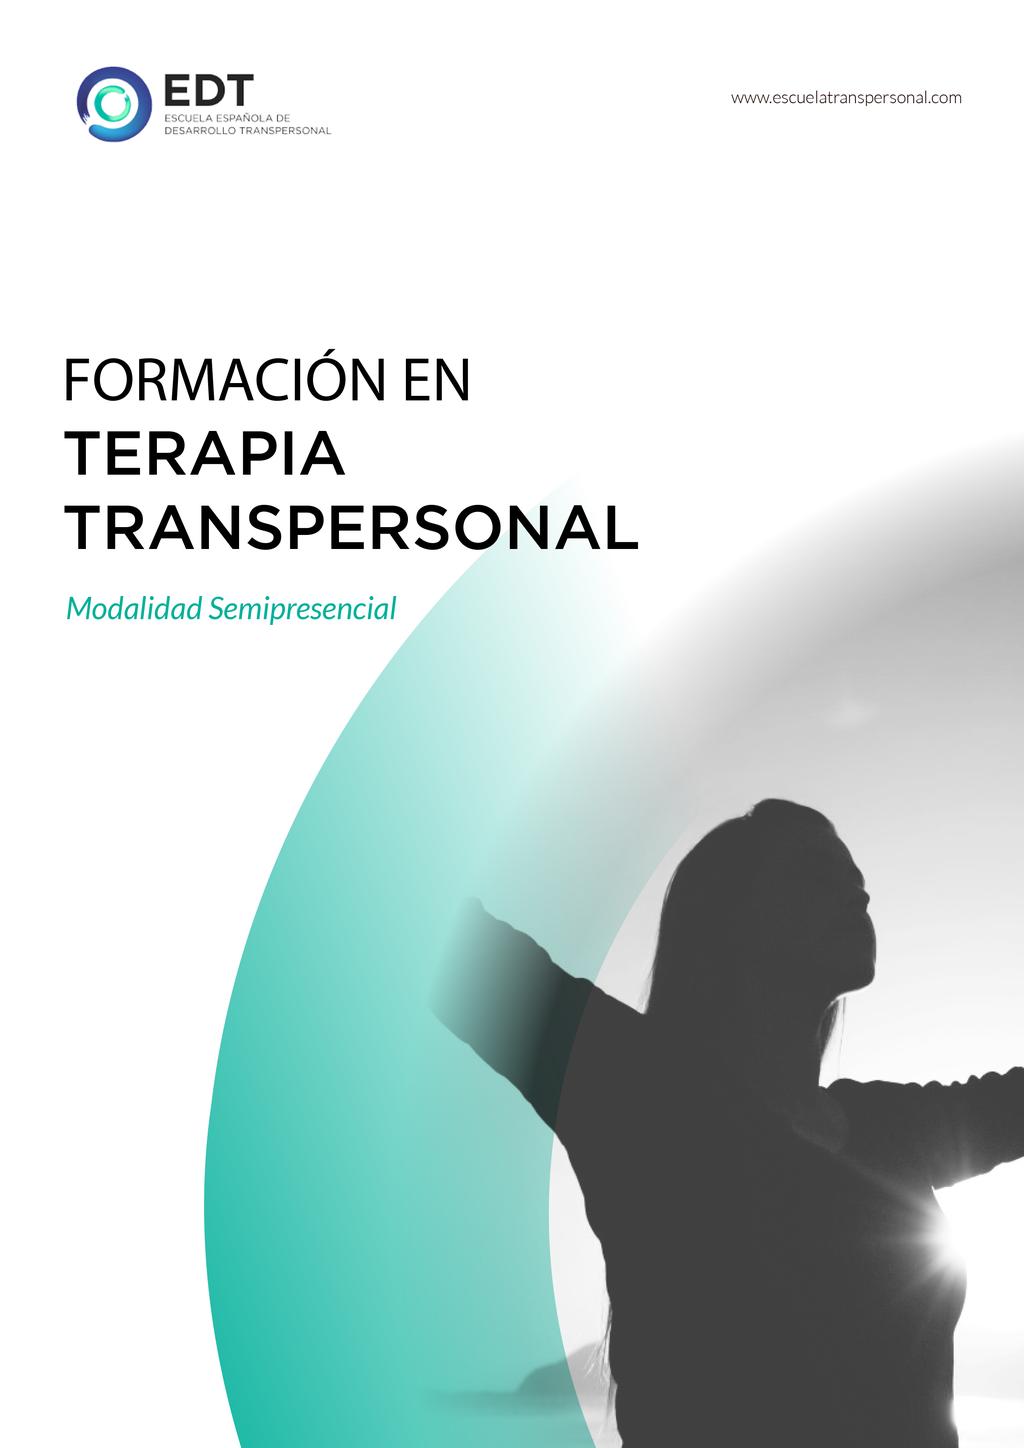 Formación en Terapia Transpersonal Avanzado 2017-18 Modalidad Semipresencial Kayzen (Madrid) Próxima